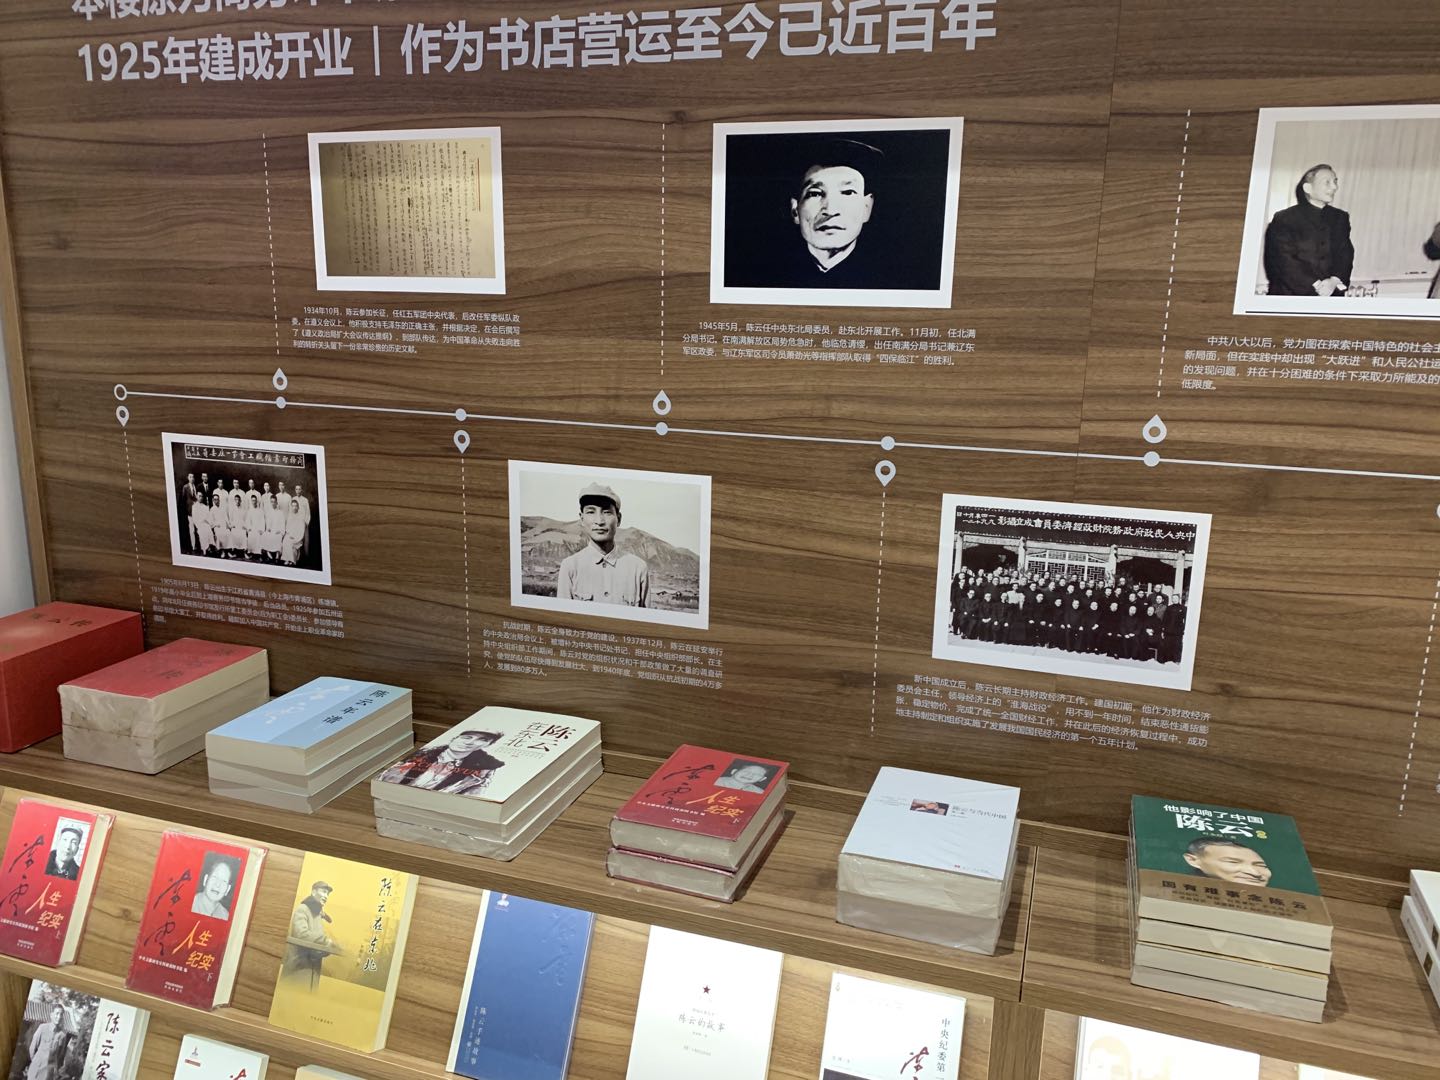 1925书局中展出的陈云同志历史照片与相关书籍。澎湃新闻记者 程千千 图